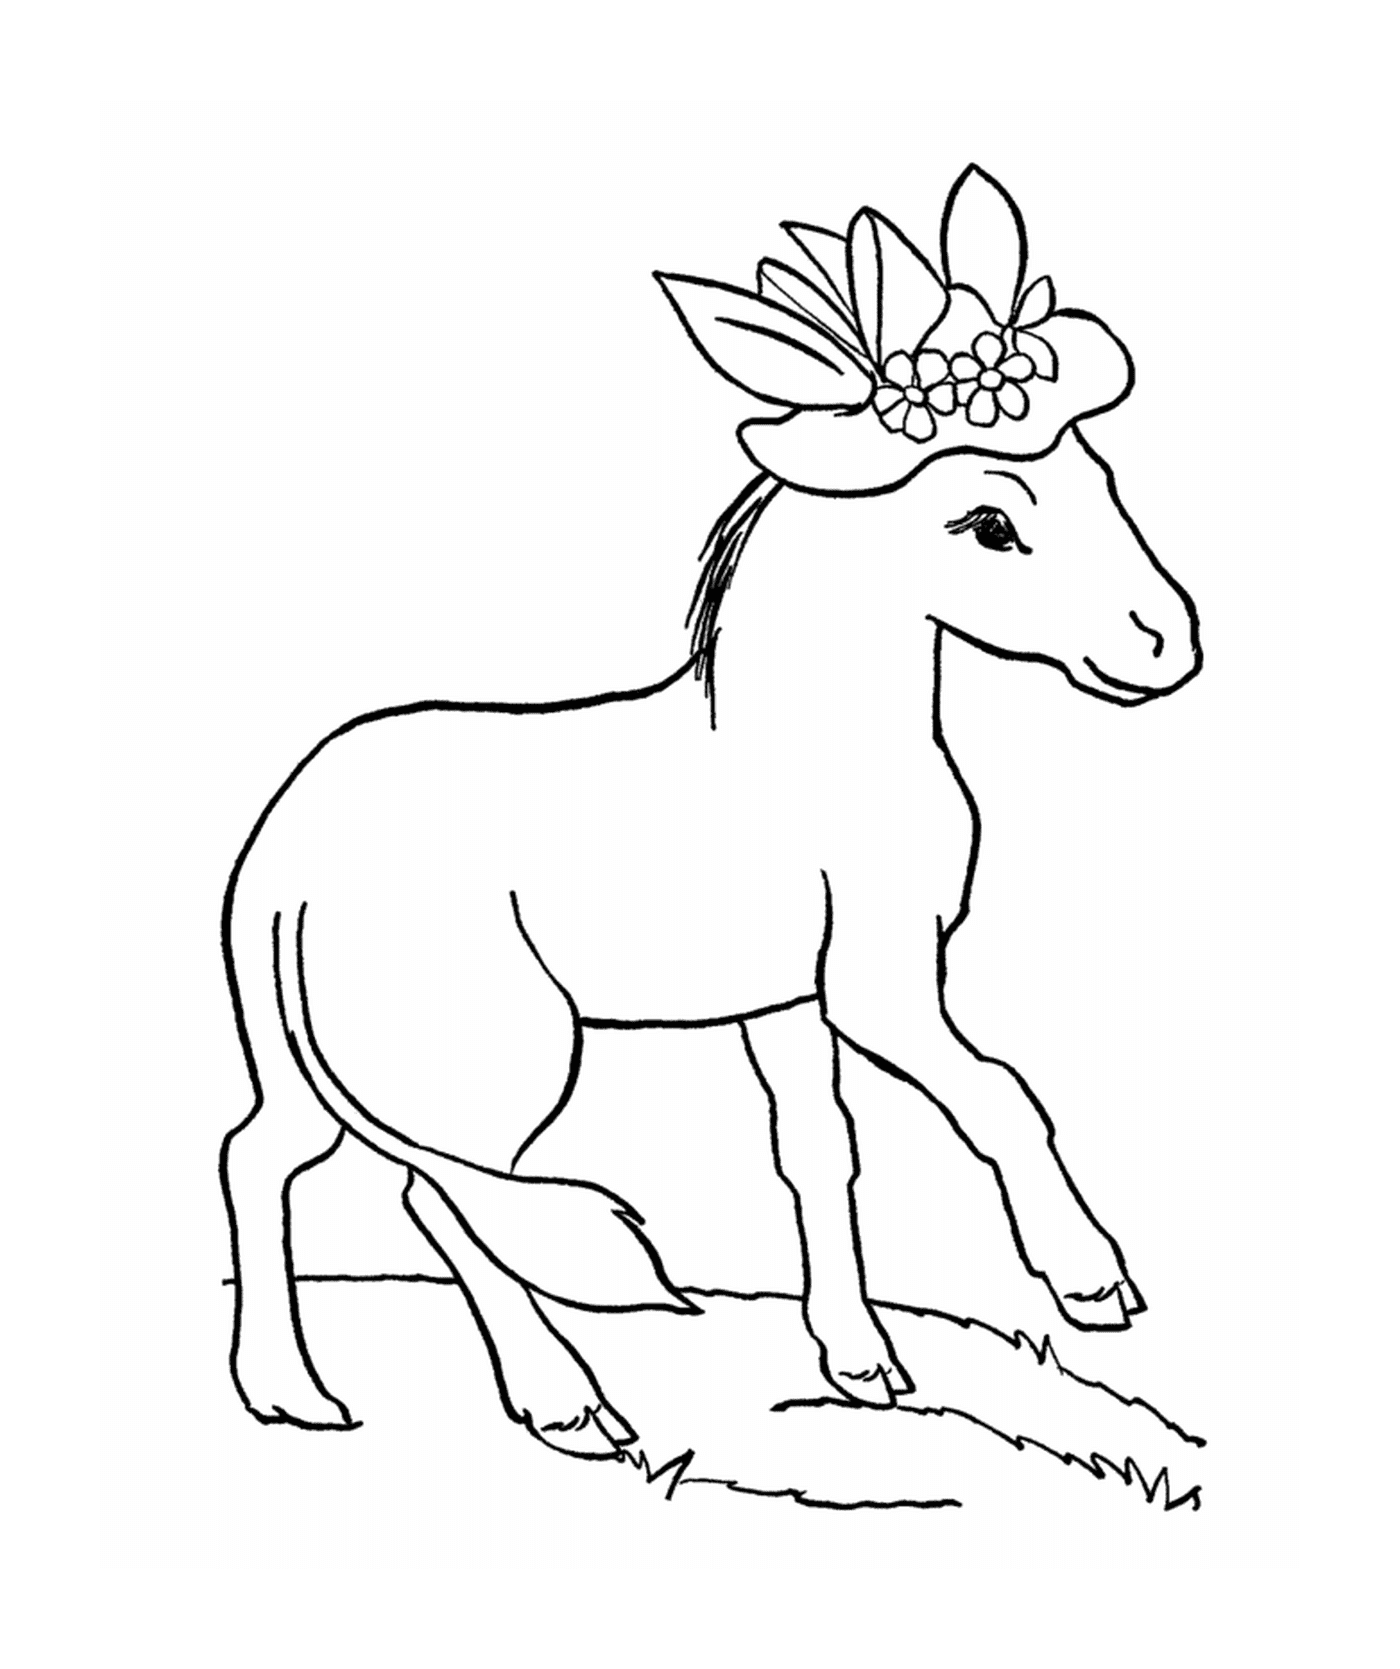  Ein Pferd mit einer Blume auf dem Kopf 